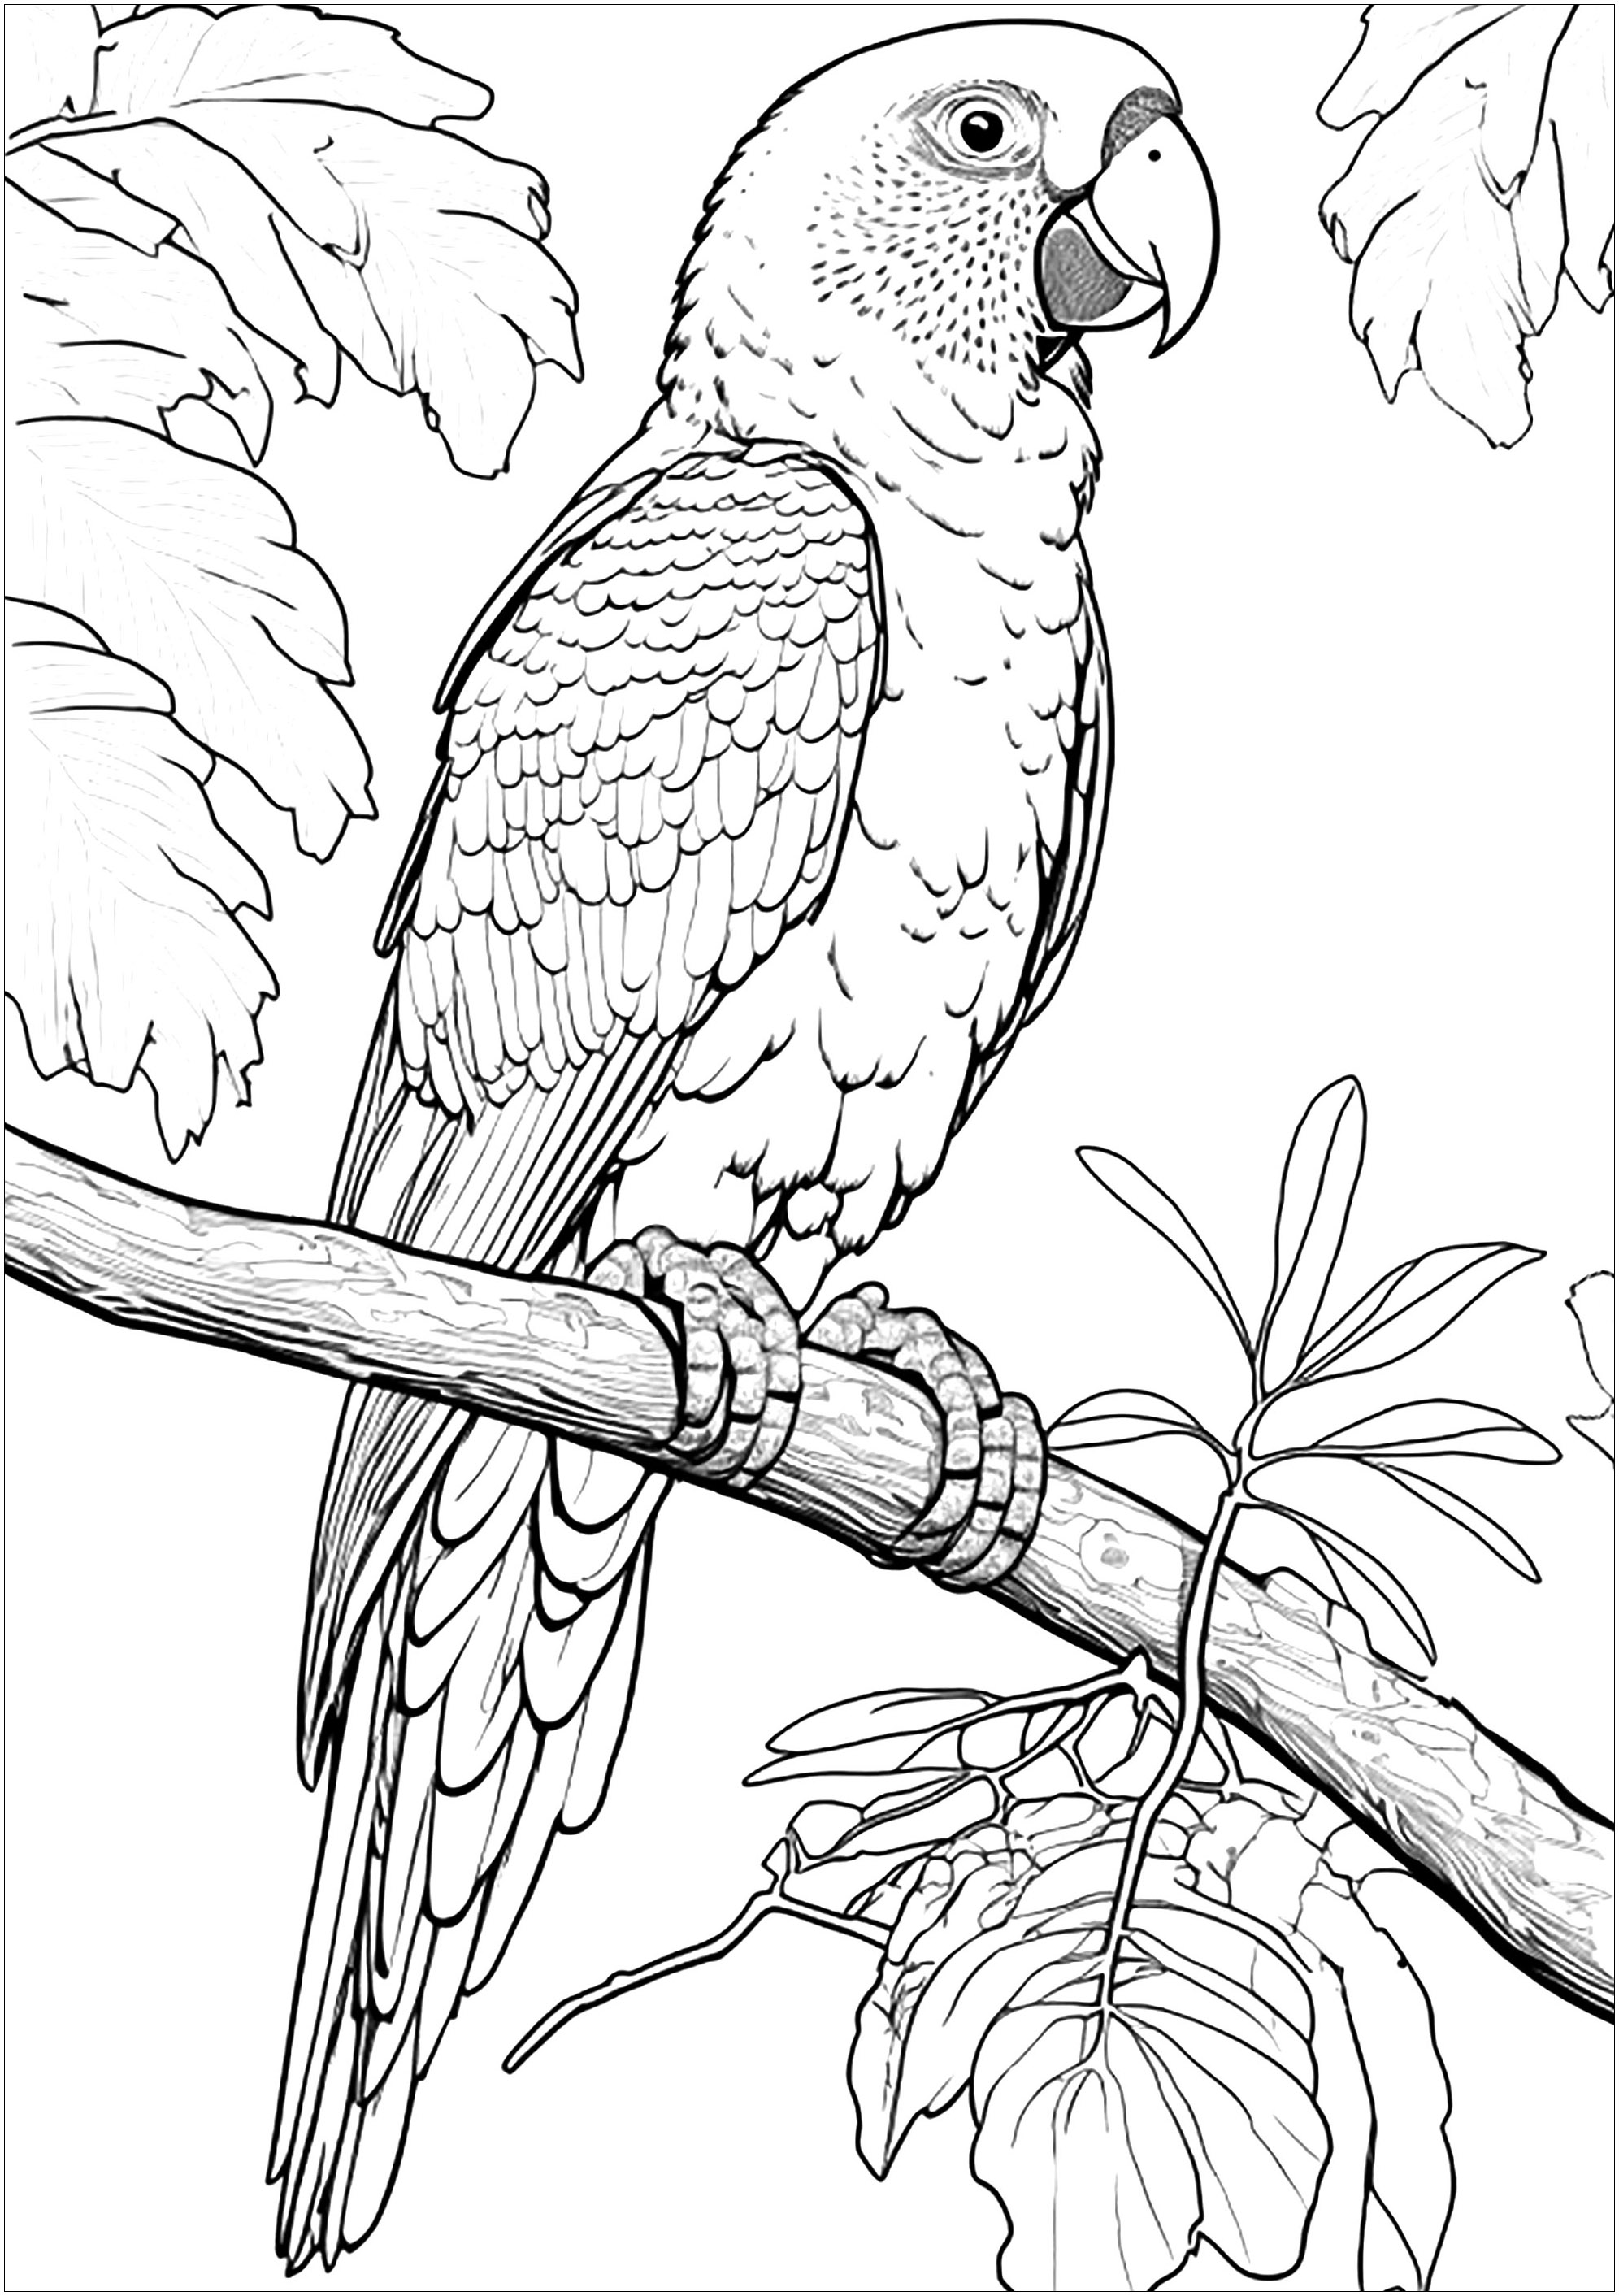 Coloriage d'un perroquet amazone. Un Perroquet du genre Amazone (amazone) dessiné de manière très réaliste, entouré d'une jolie végétation.